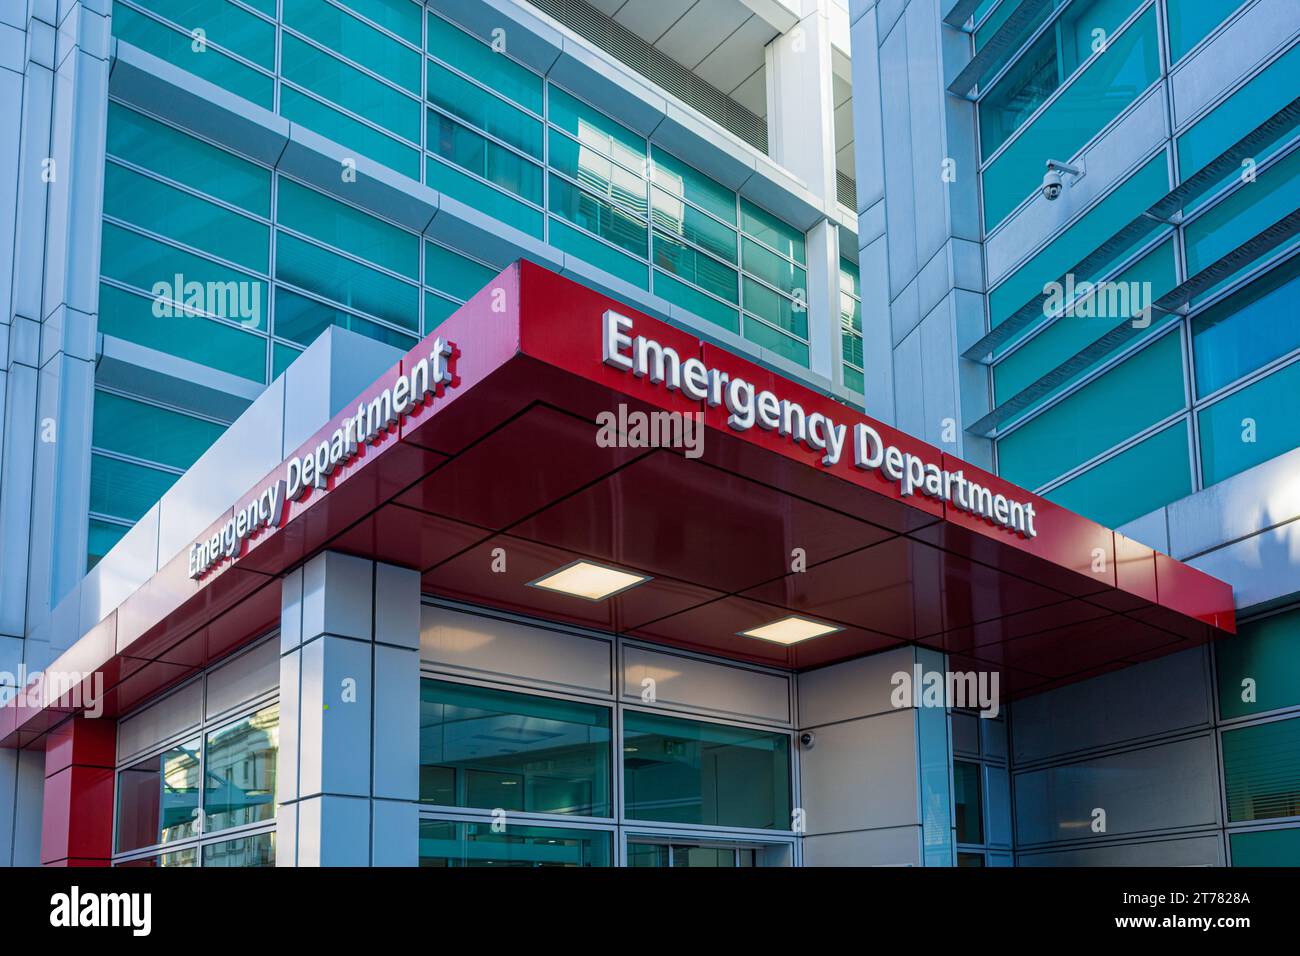 Dipartimento di emergenza dell'ospedale del Regno Unito - ospedale A&e pronto soccorso - Ufficio di emergenza e incidente in un grande ospedale del Regno Unito nel centro di Londra. Foto Stock